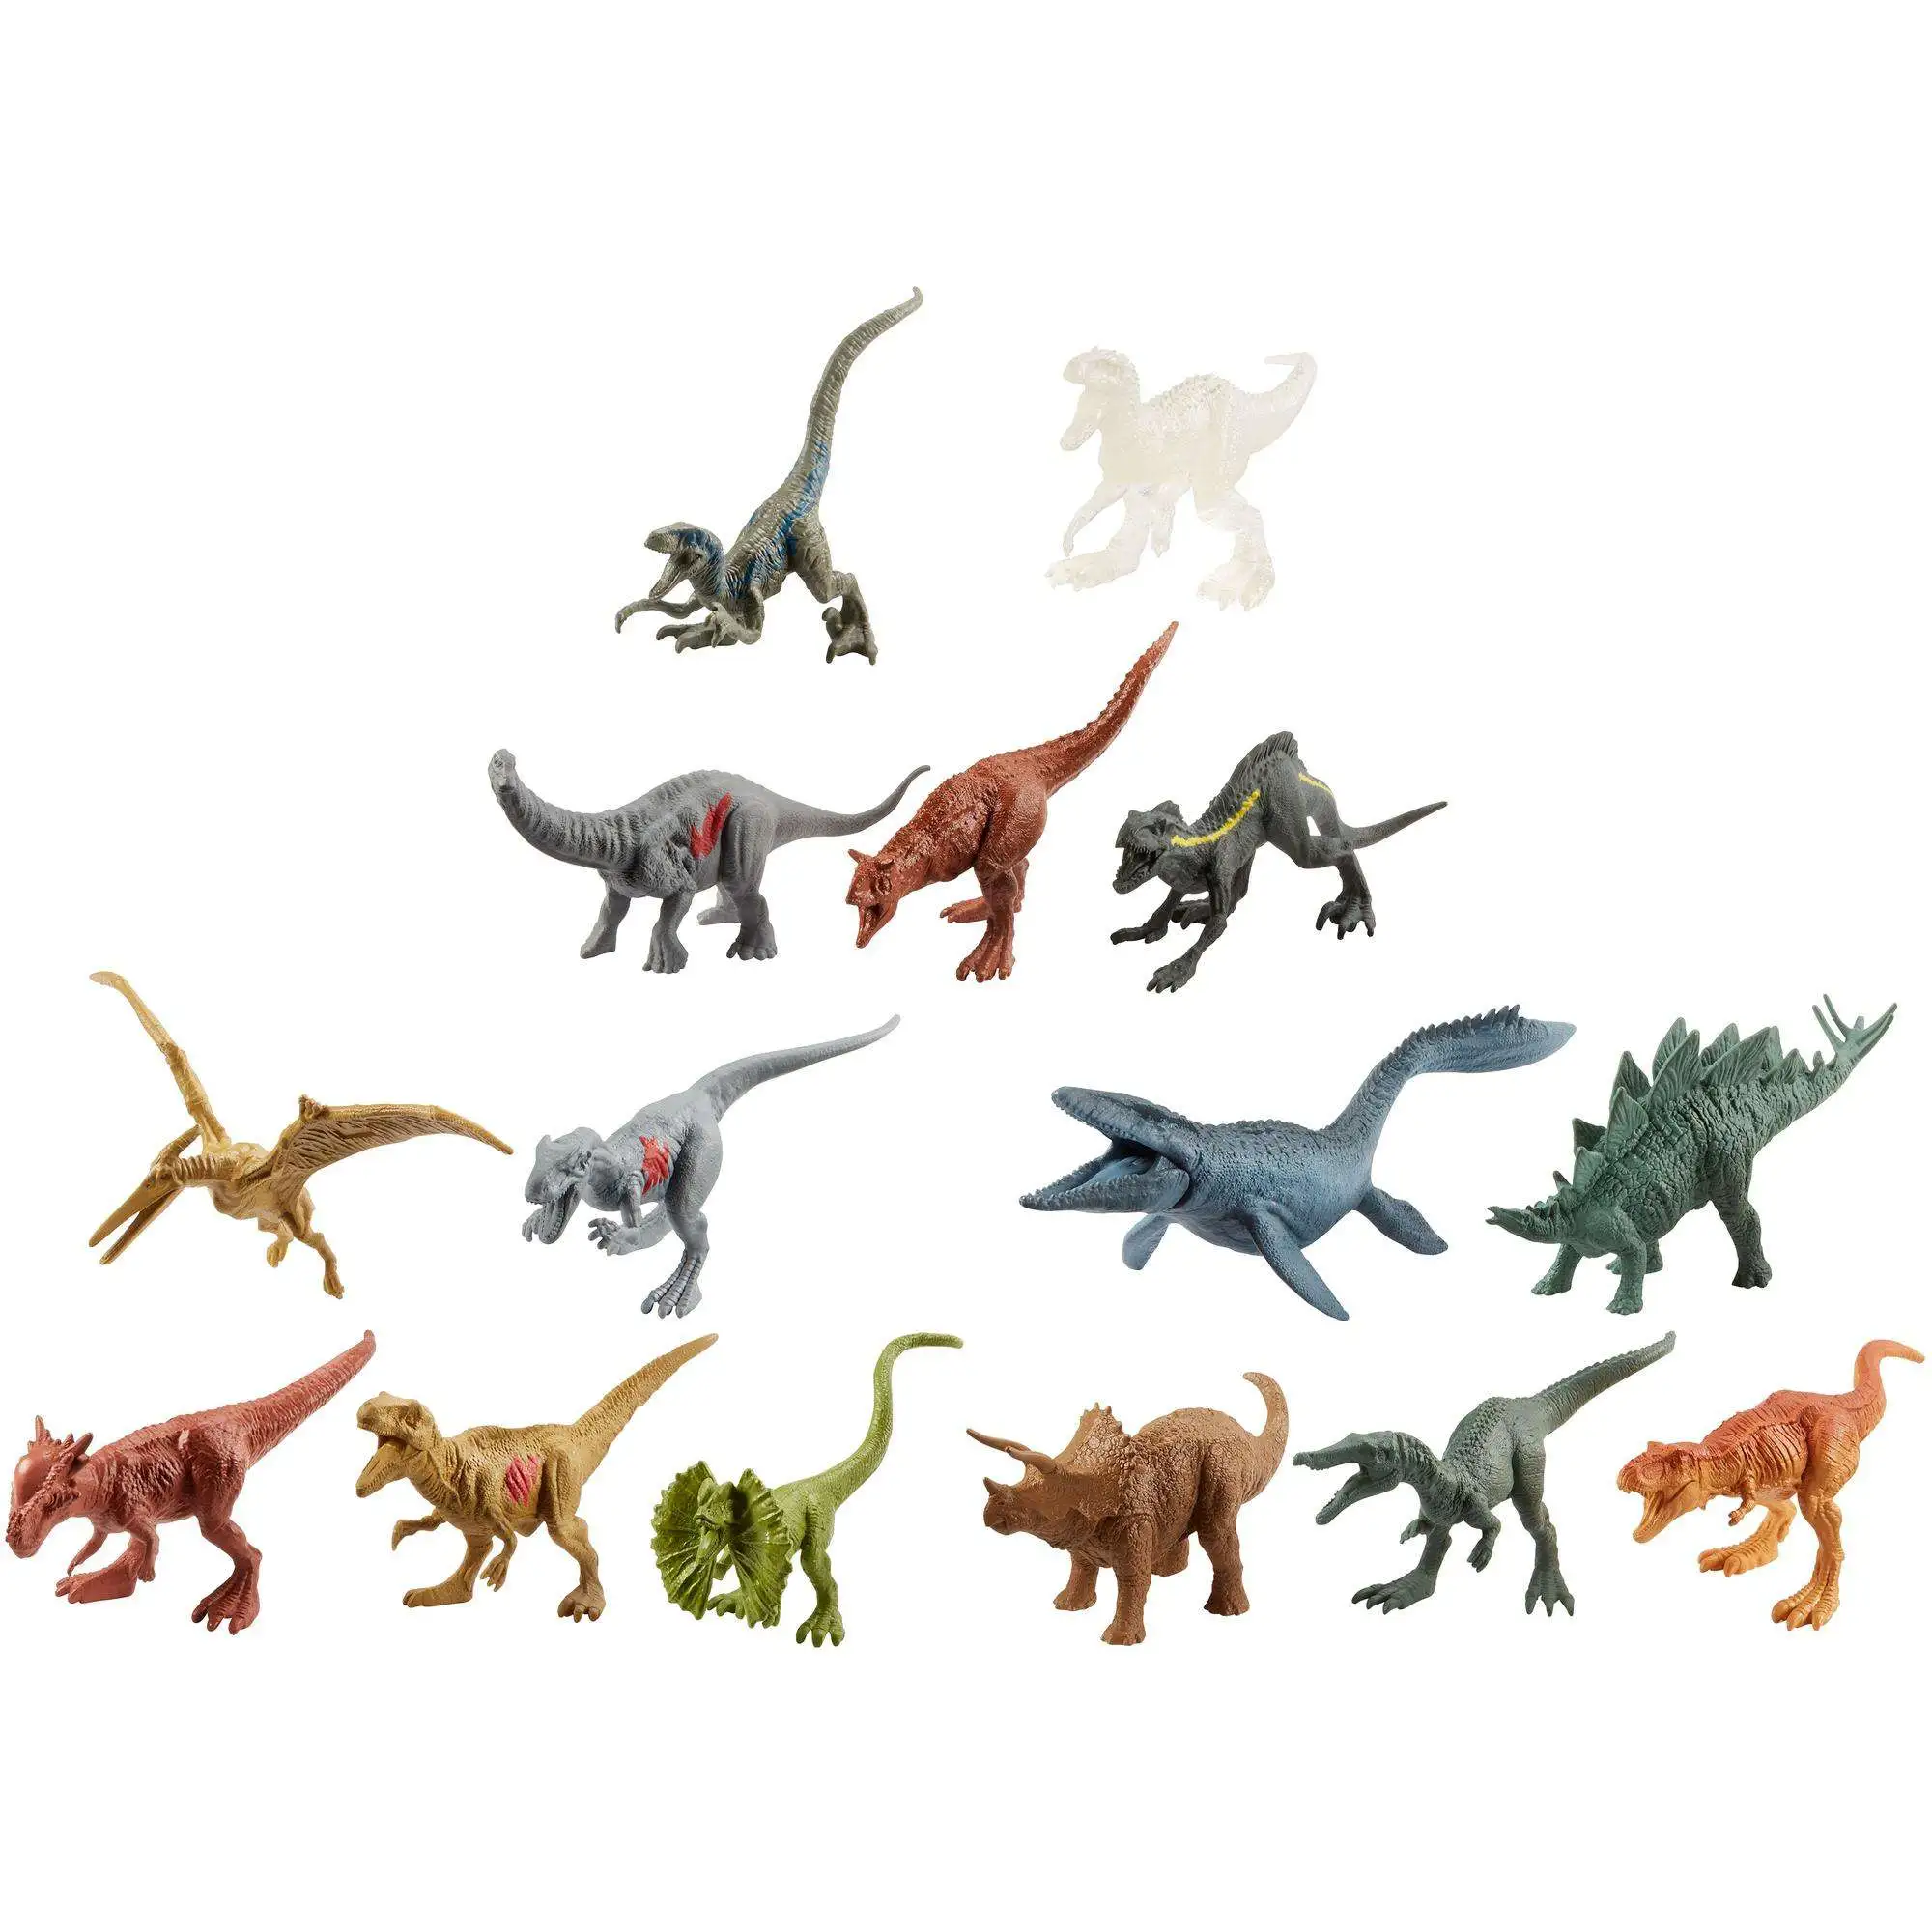 Мир динозавров игрушка. Набор Jurassic World 15 мини-динозавров. Детский мир динозавры Jurassic World. Динозавры Юрасик ворлд. Игрушки динозавров парк мир Юрского периода.